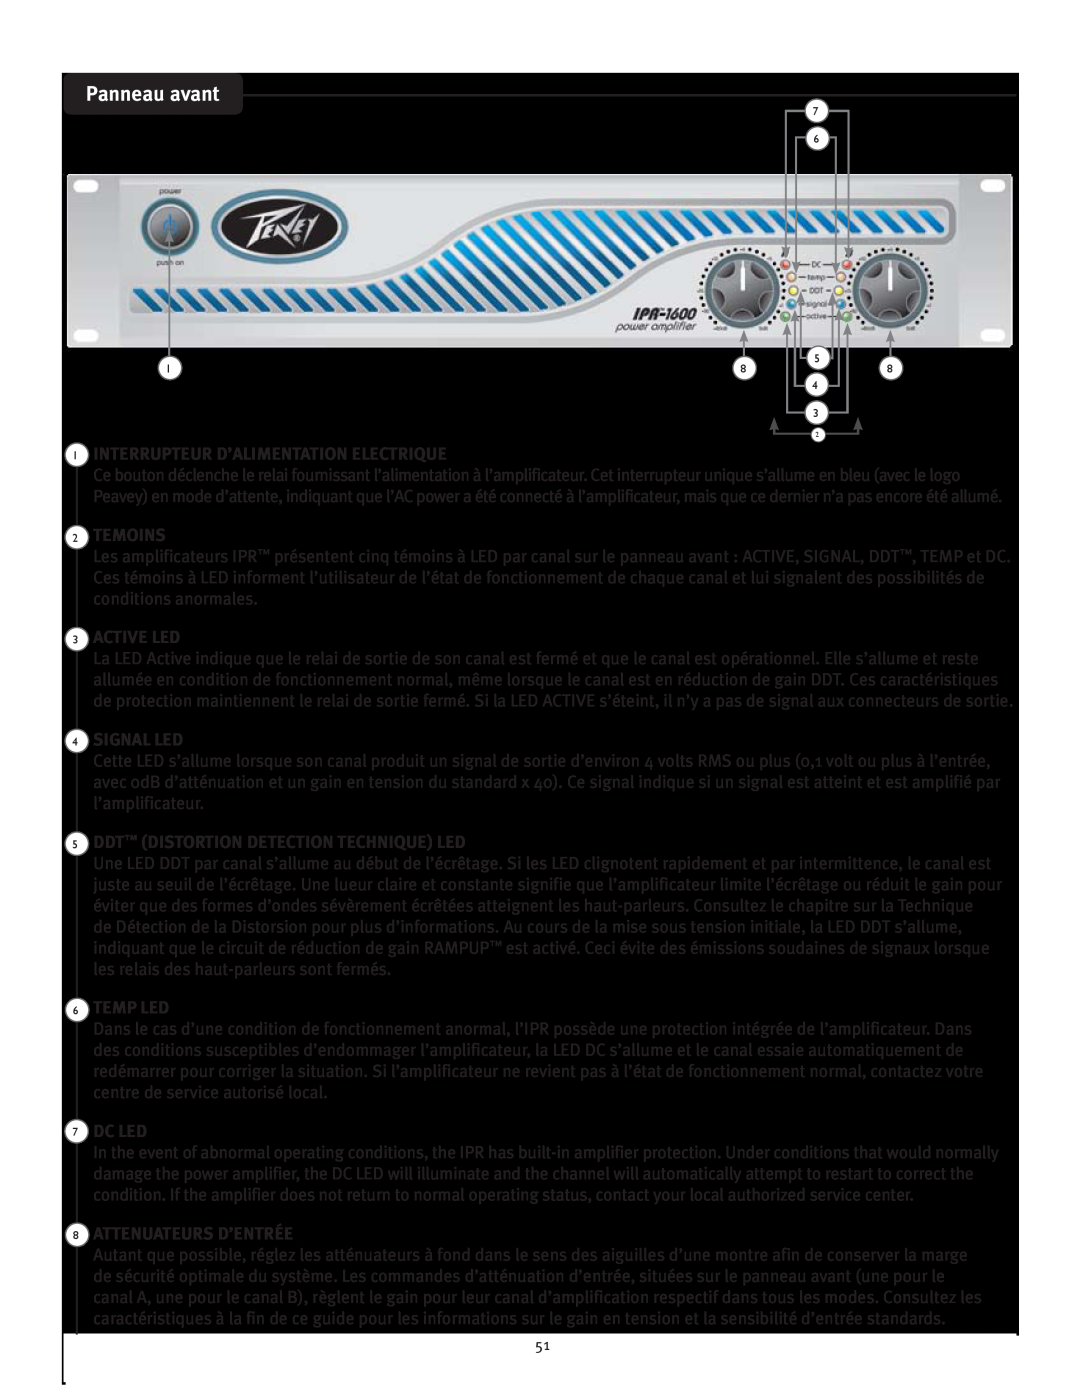 Peavey IPR 1600 Panneau avant, Interrupteur D’Alimentation Electrique, Temoins, Active Led, Signal Led, Temp Led, Dc Led 